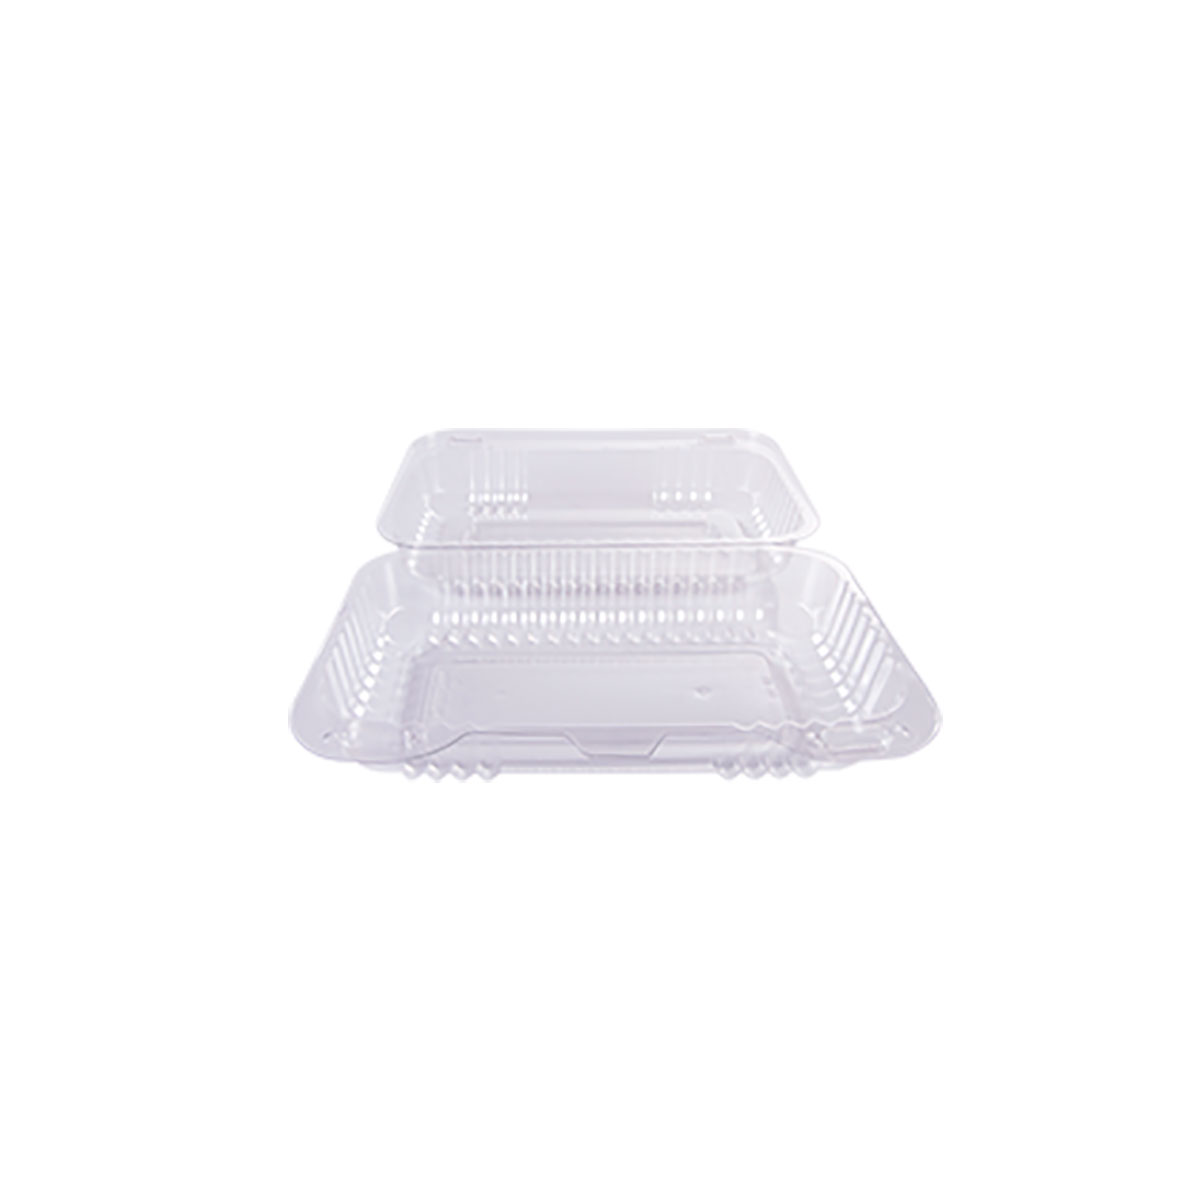 Caixa Lunch Box 10 Transparente Prafesta 100und  - Foto 1